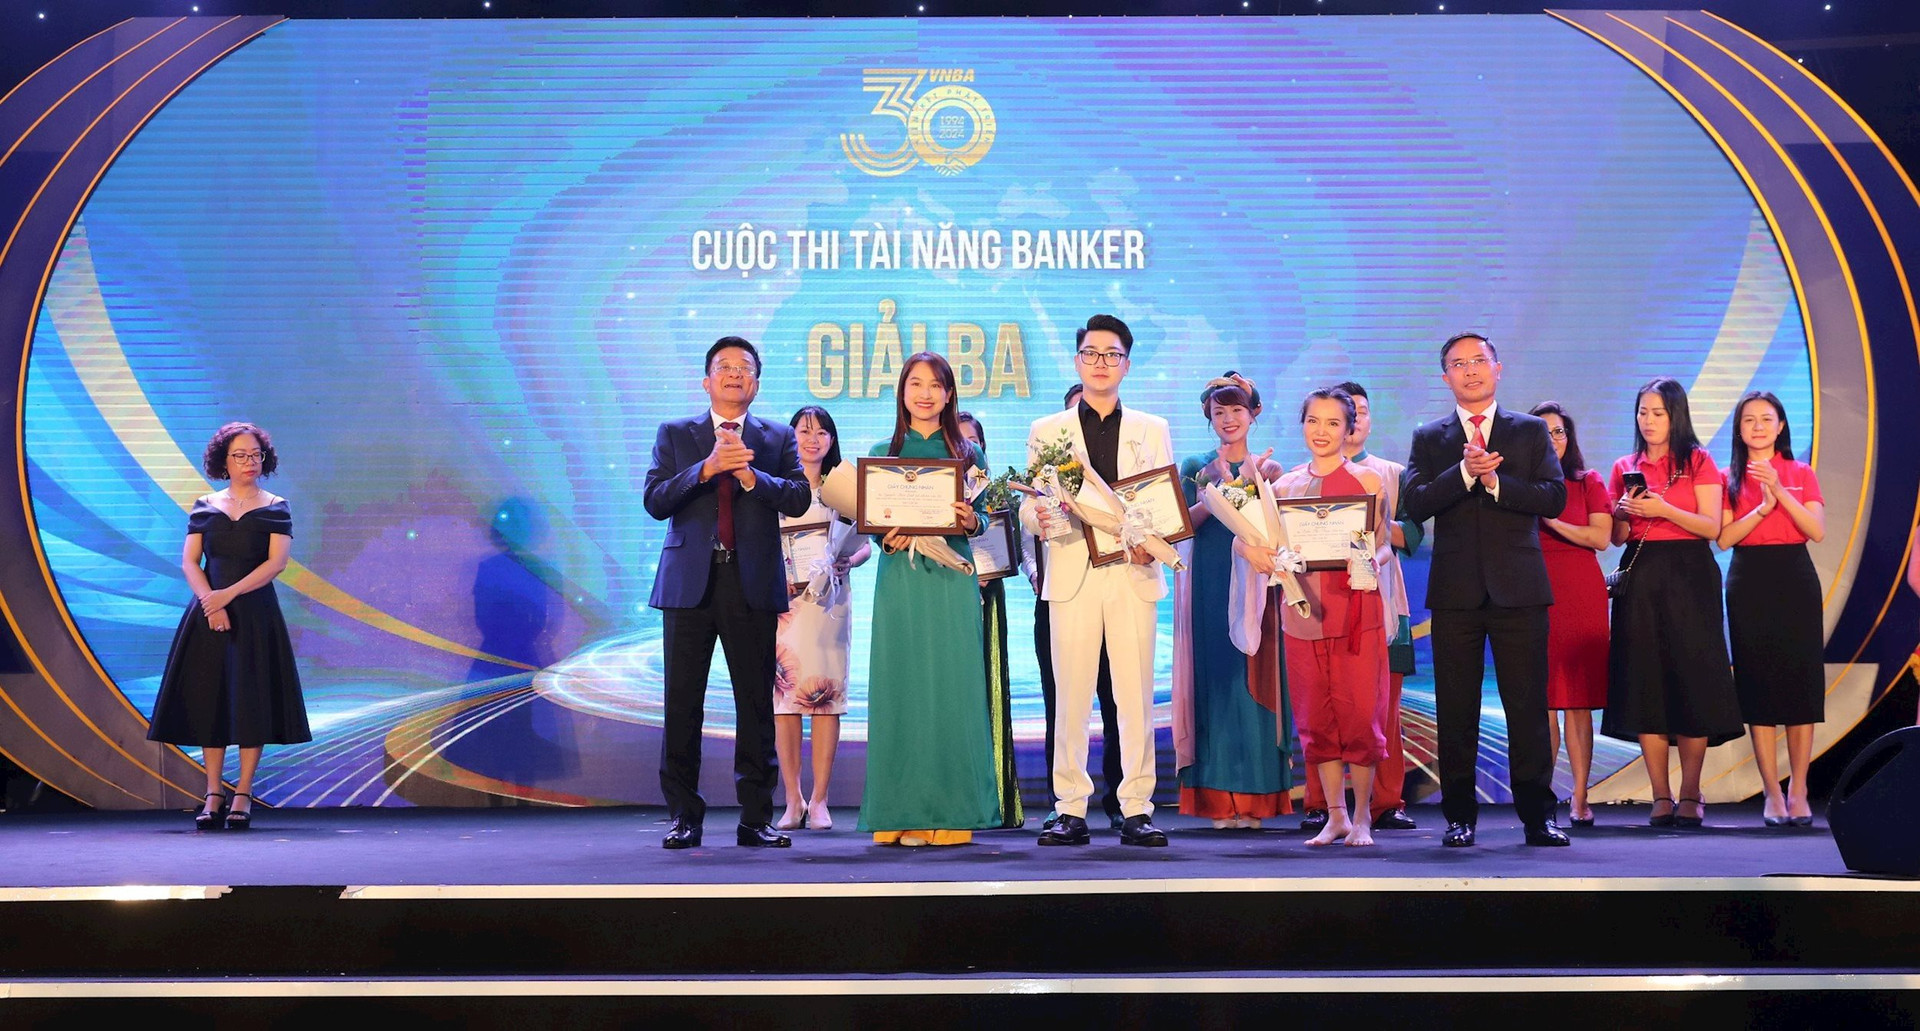 Ông Phạm Đức Ấn - Chủ tịch HHNH và ông Nguyễn Quốc Hùng, Trưởng BTC trao giải cho các thí sinh đạt giải Ba Cuộc thi Tài năng Banker.